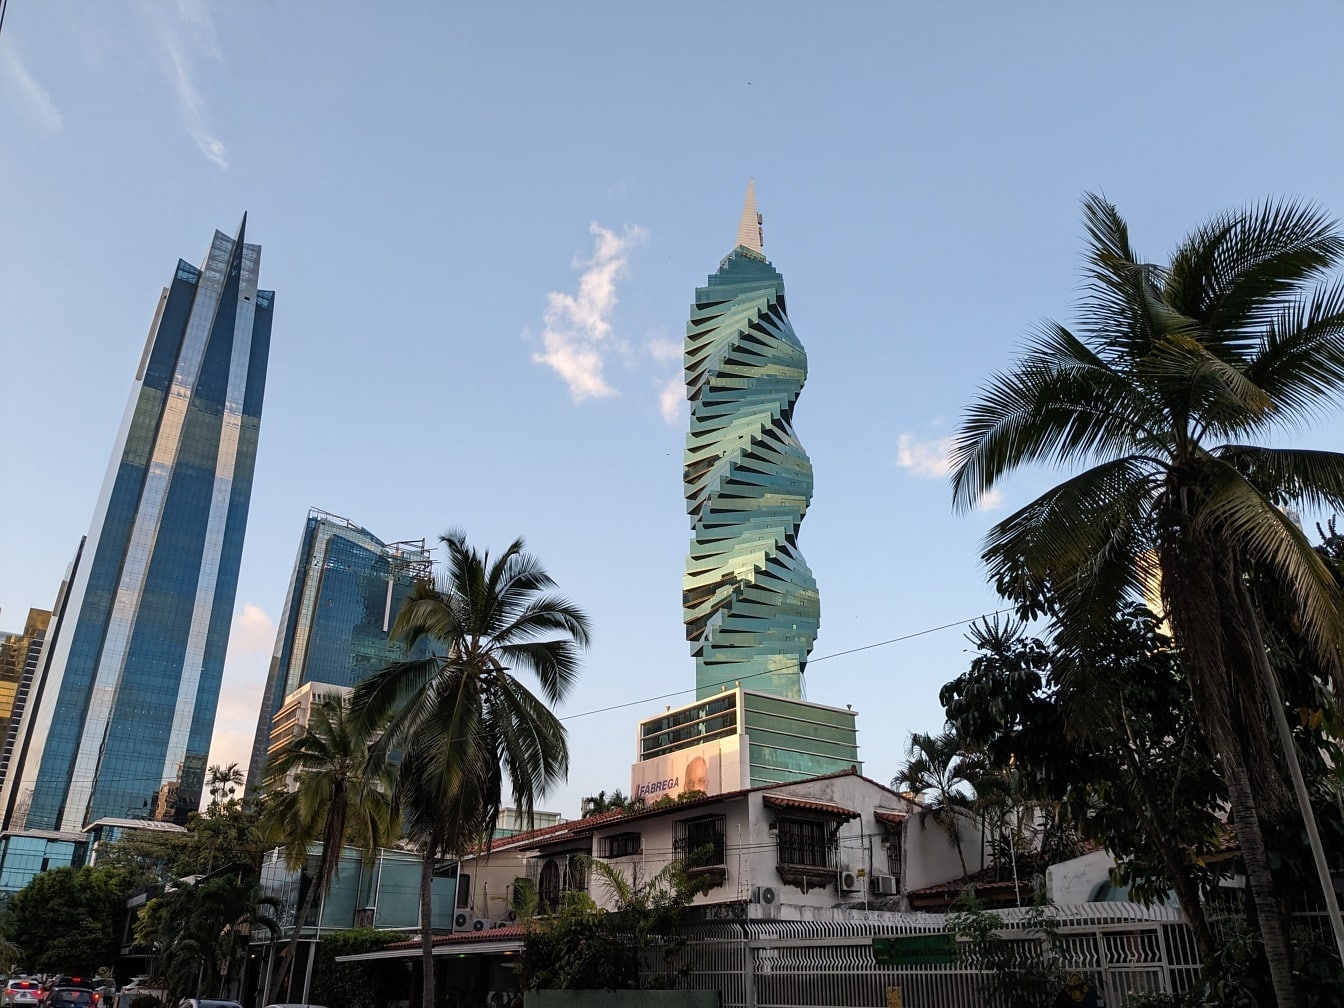 Πύργος F&F με σπειροειδή κορυφή στο κέντρο της πόλης του Παναμά